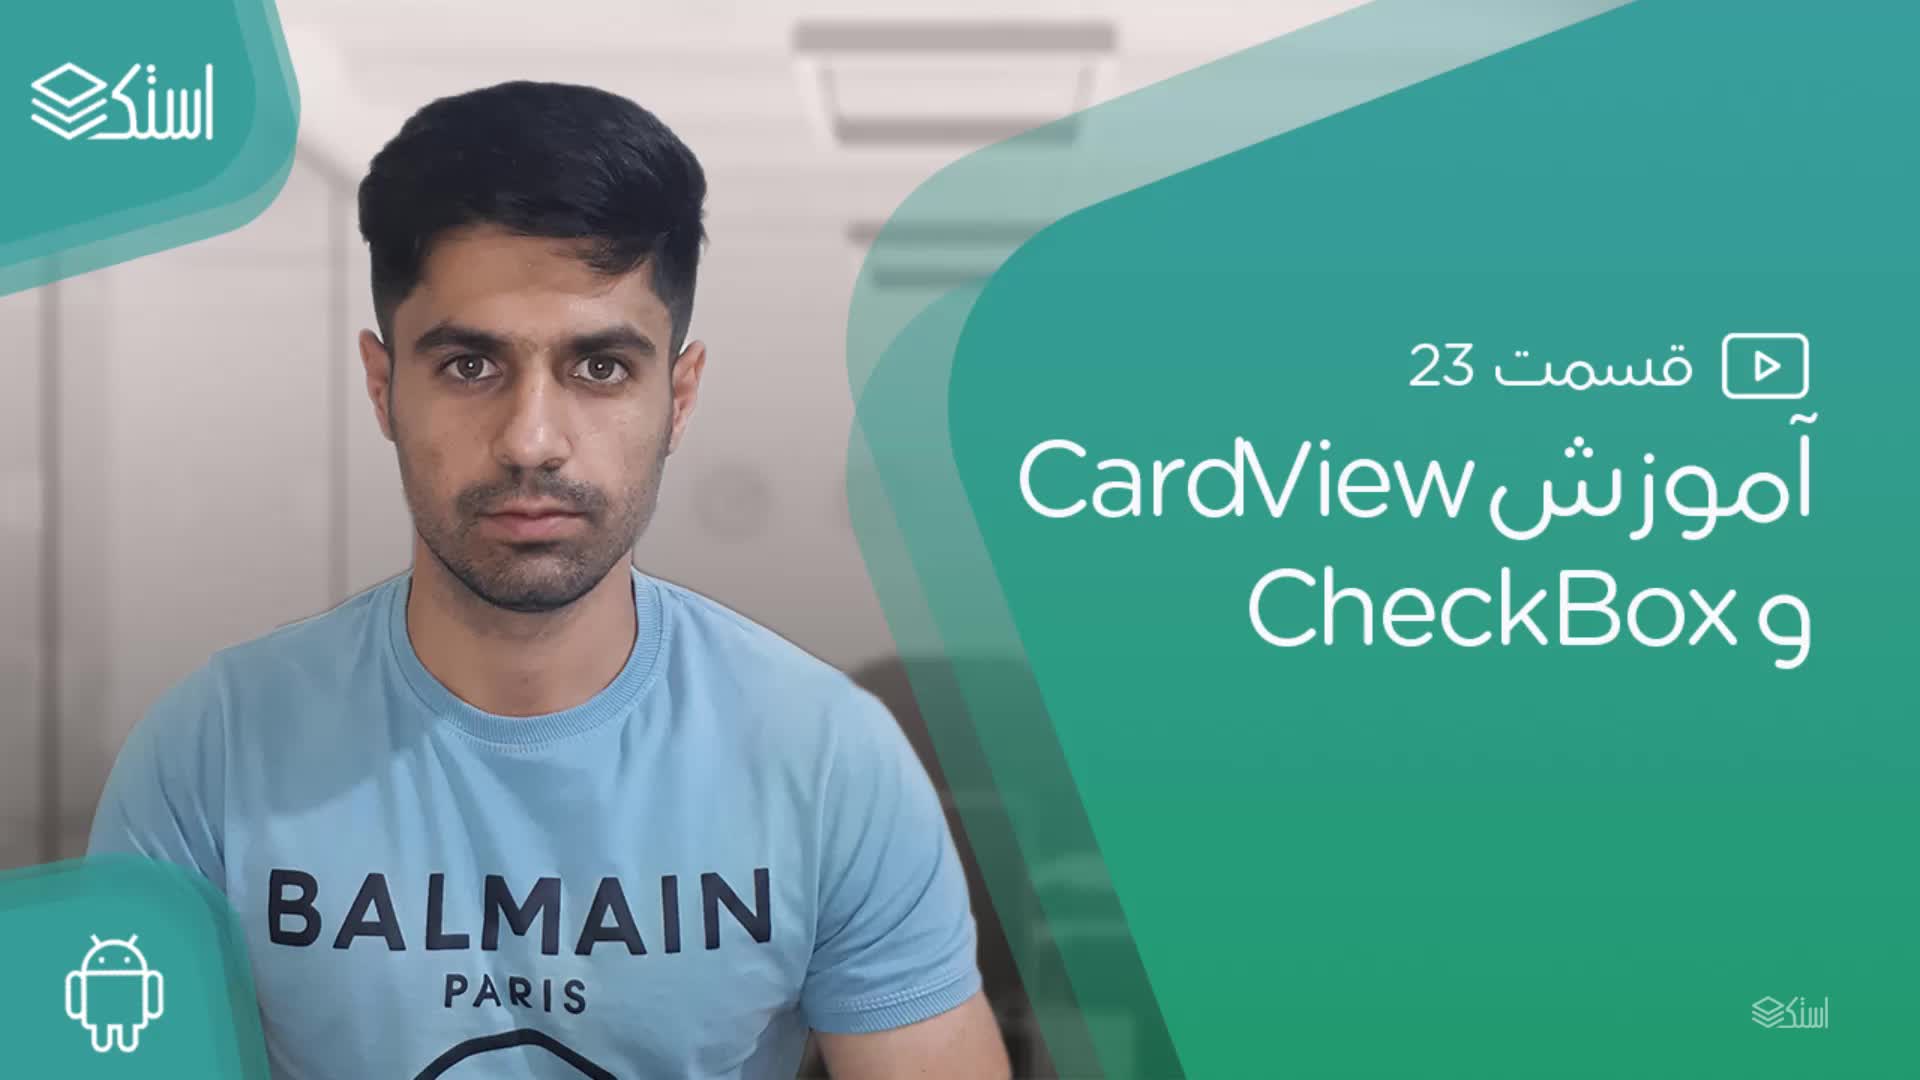 آموزش CardView و CheckBox در اندروید (ویدیو + توضیحات) - قسمت 22 - استک لرن